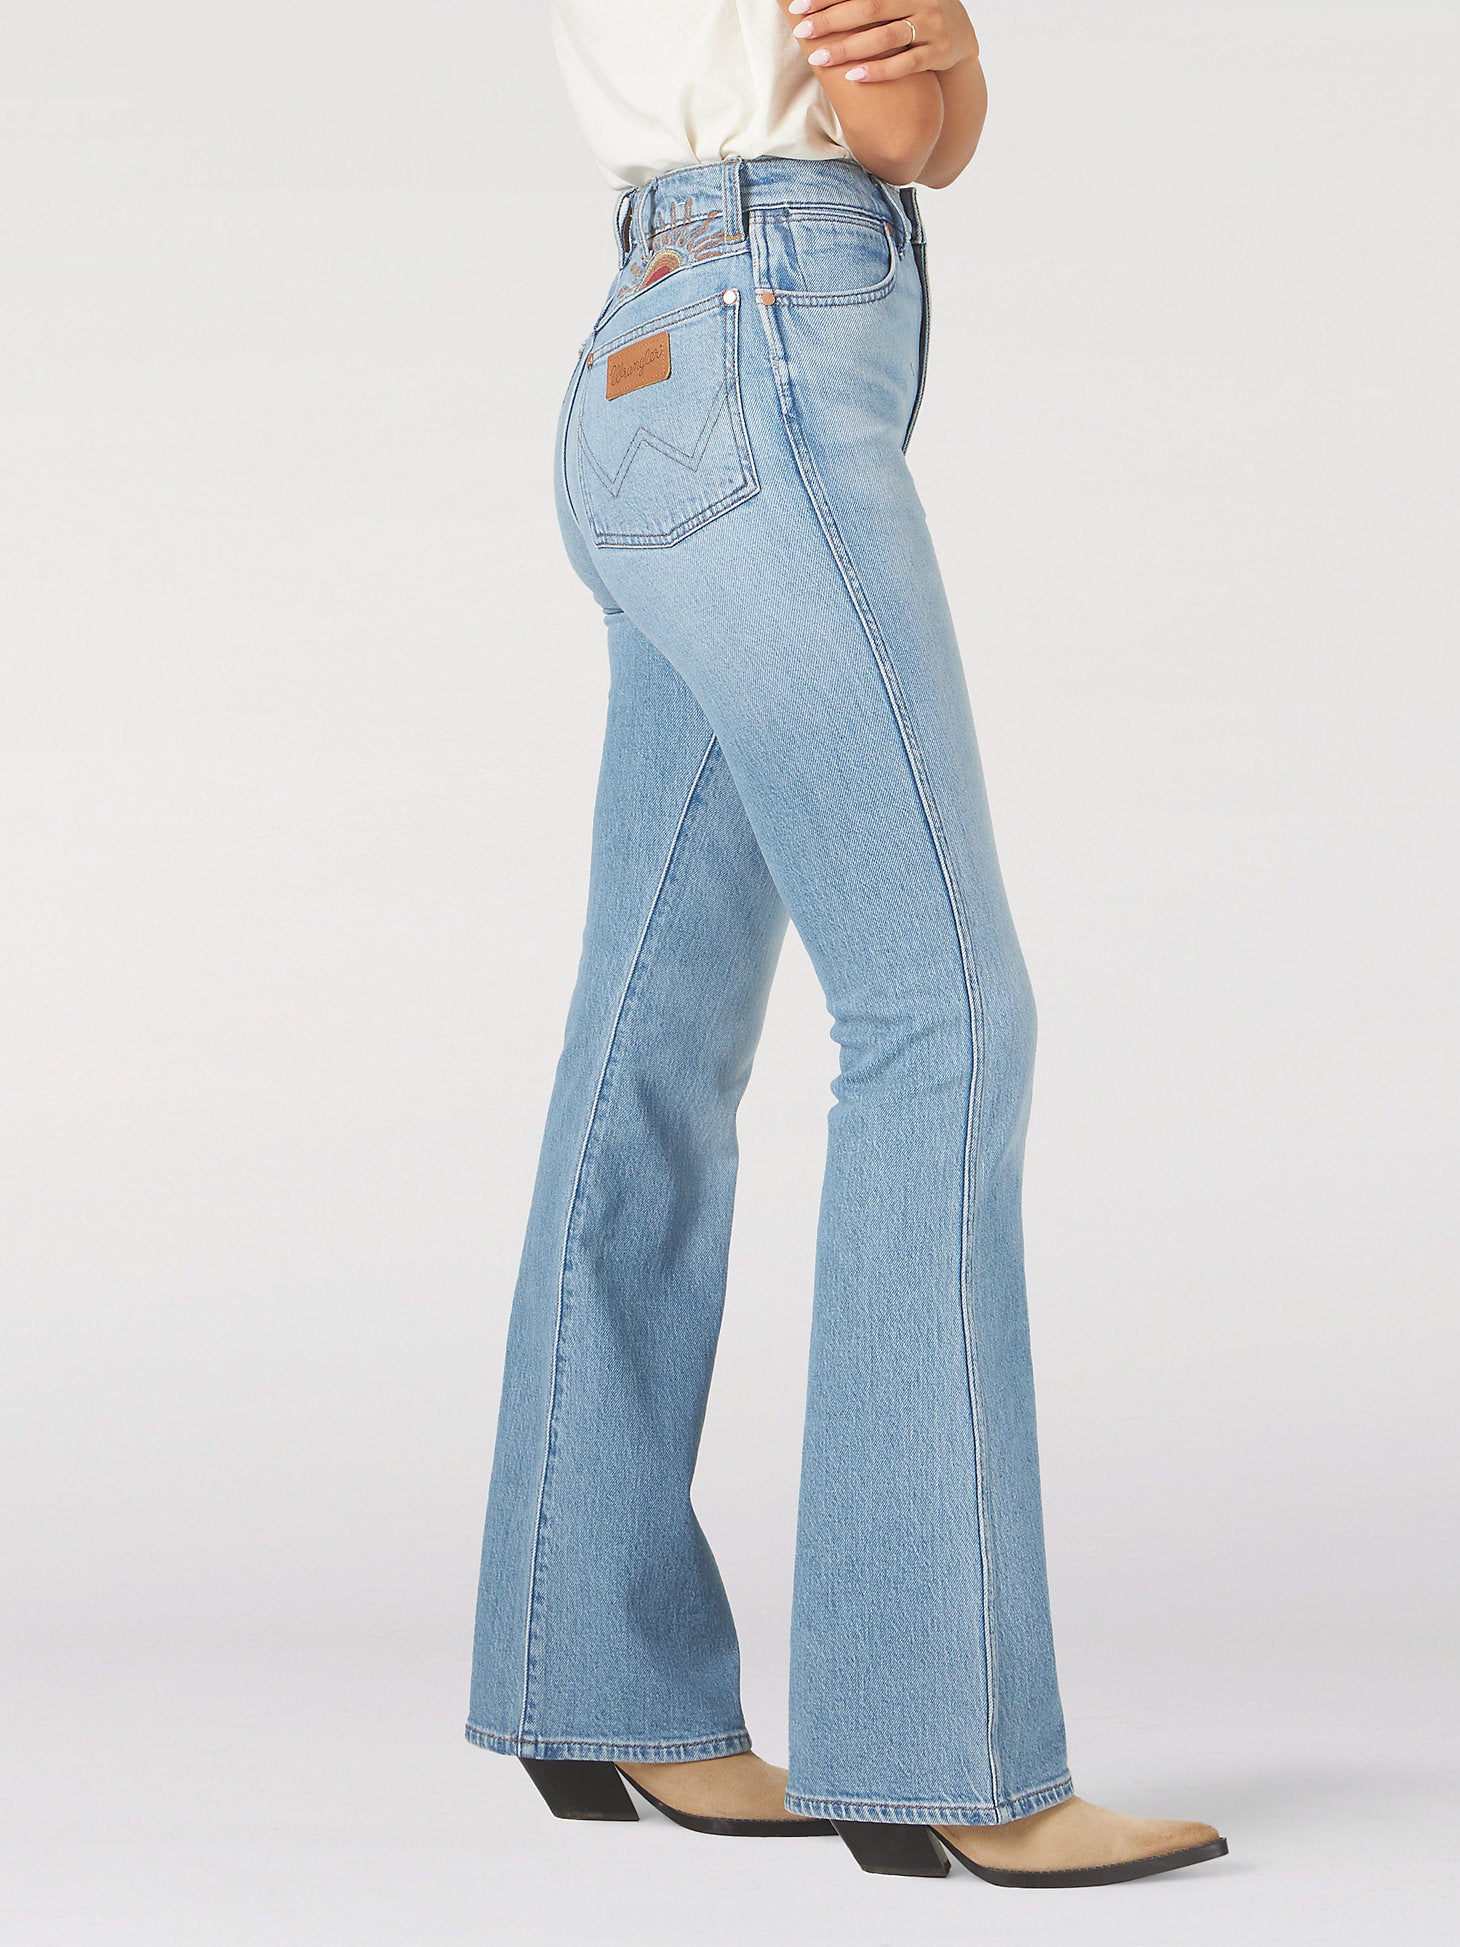 Wrangler® Westward 626 High Rise Boot Jean - Women's Jeans in Sunrise